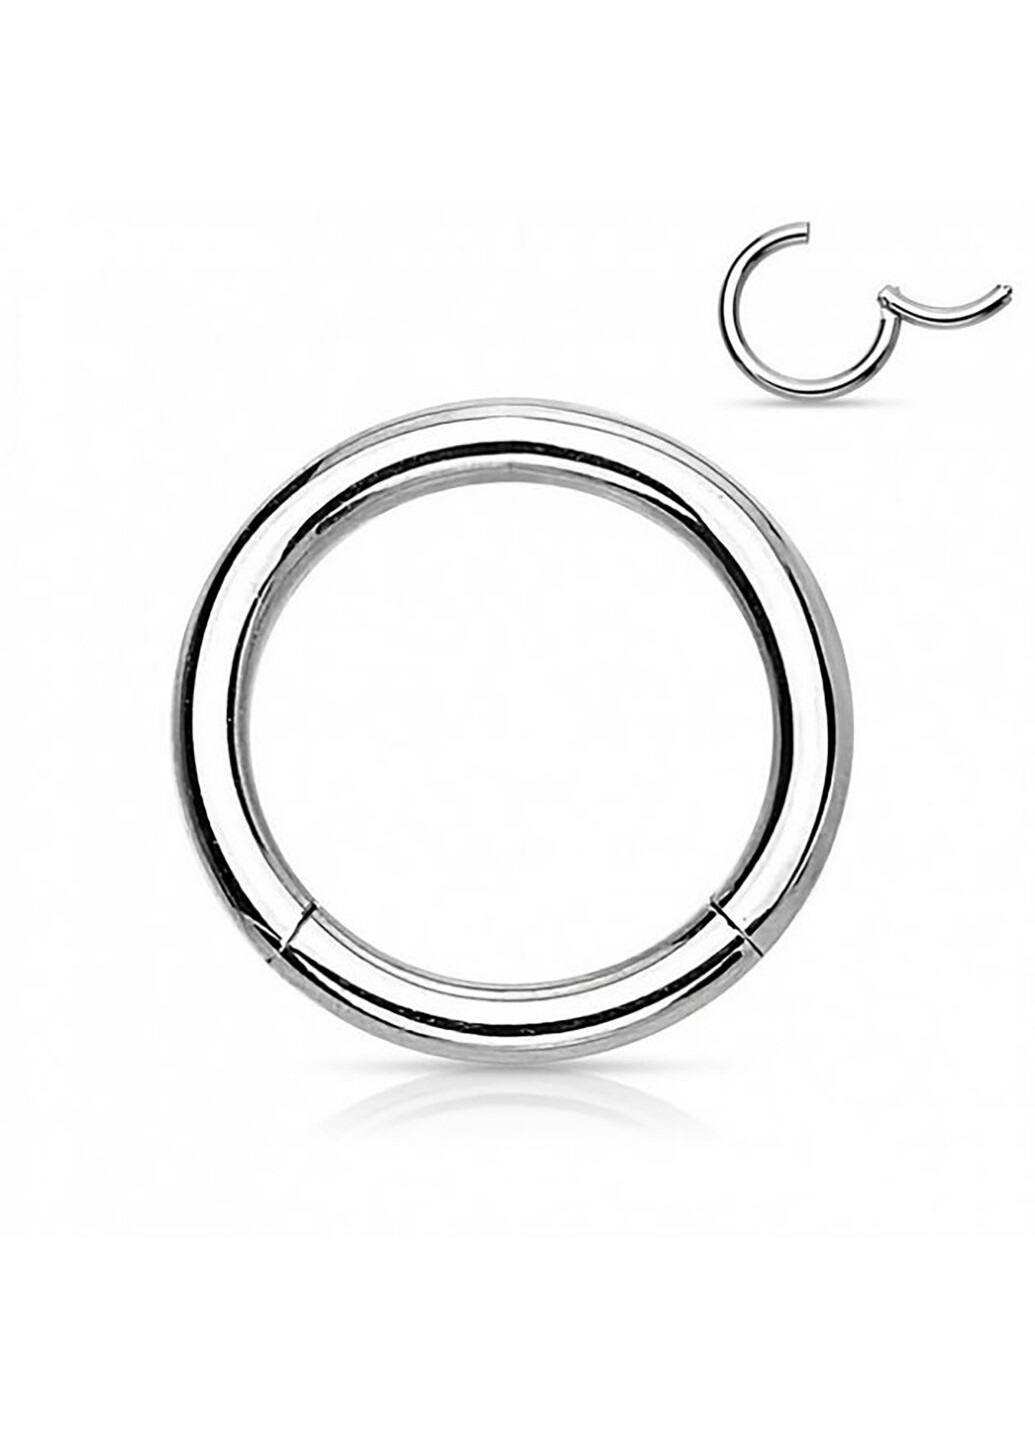 Универсальное кольцо - кликер из стали бренда PiercedFish диаметром 16 мм, толщиной 1,6 мм Spikes (257898199)